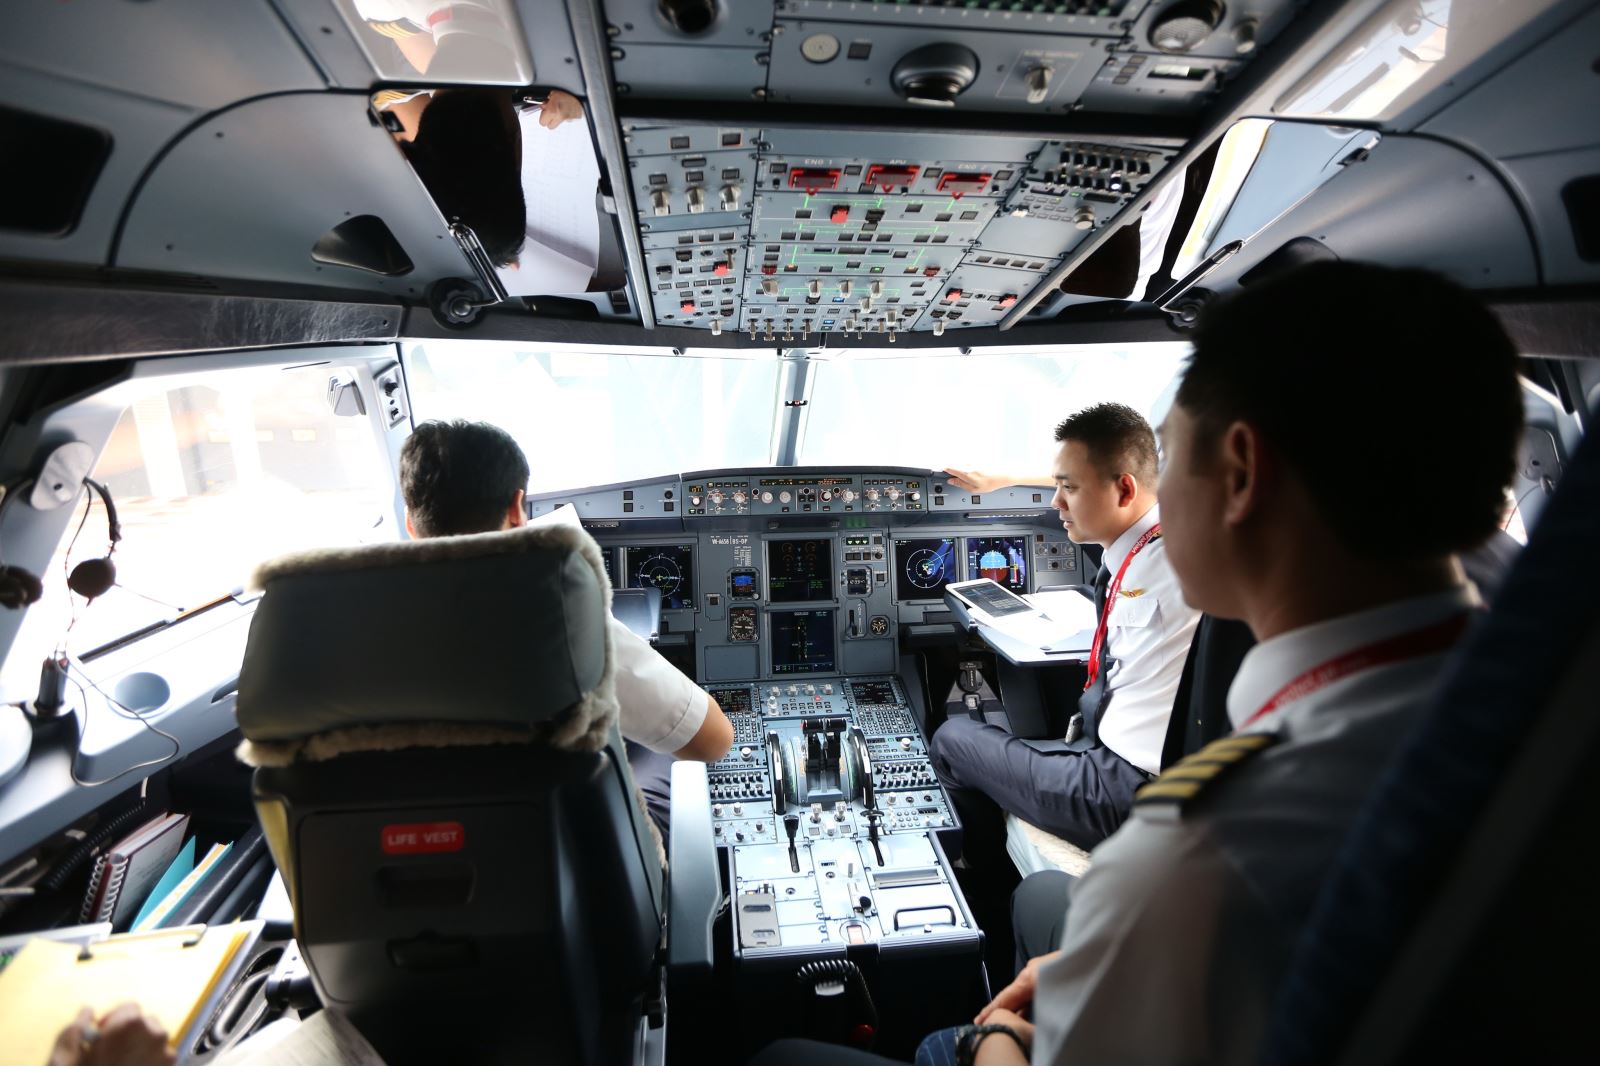 Hãng hàng không Vietjet luôn chủ động trong công tác quản lý nguồn lực, đảm bảo an toàn tuyệt đối cho tất cả các chuyến bay của hãng. 